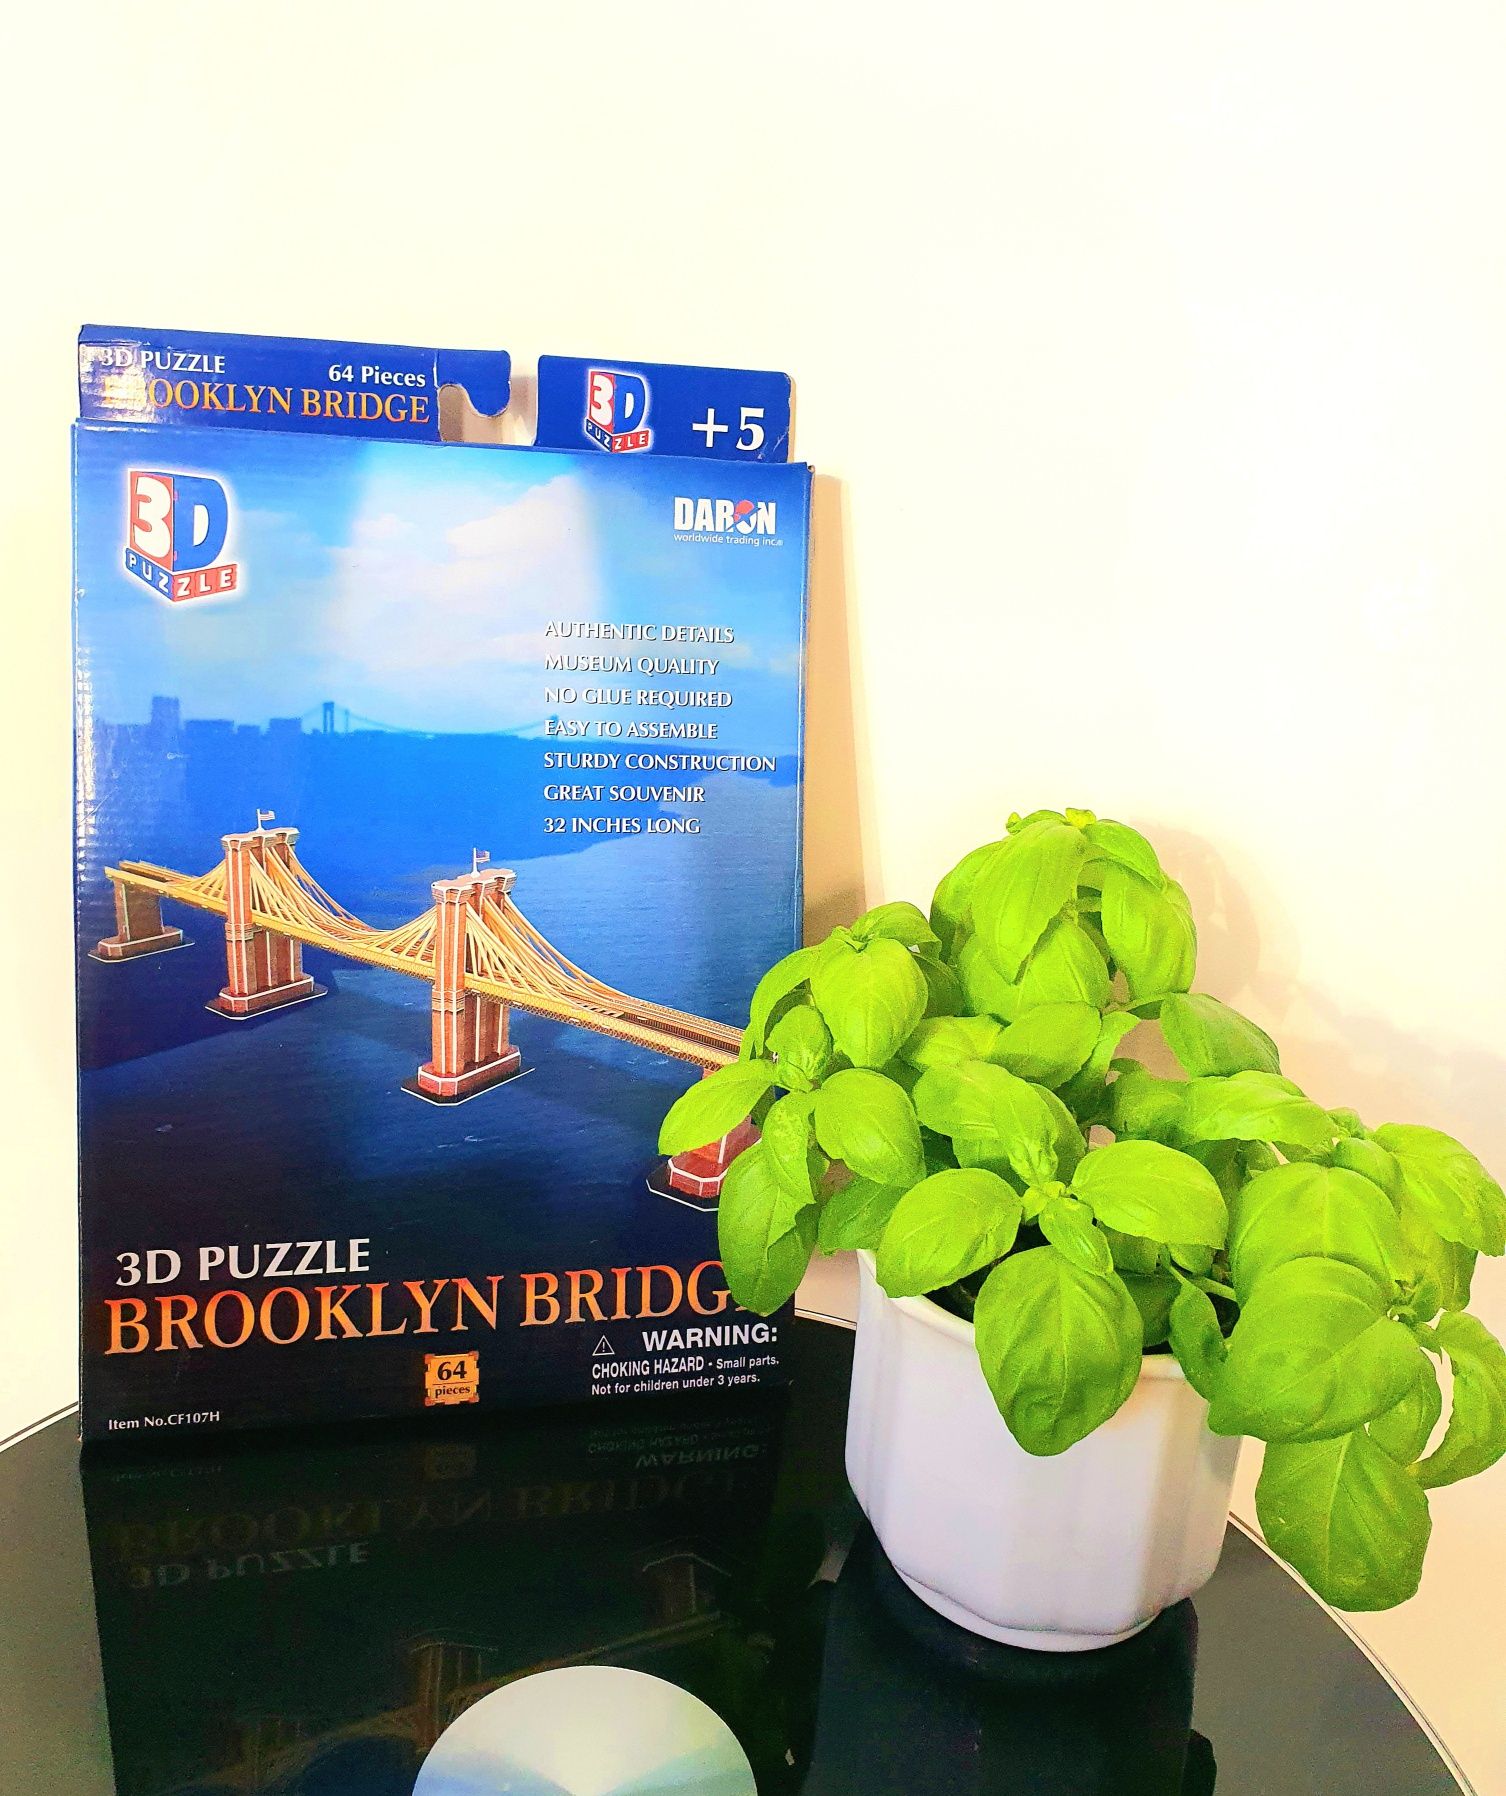 NOVO - Puzzle 3D - Brooklyn Bridge - 64 peças